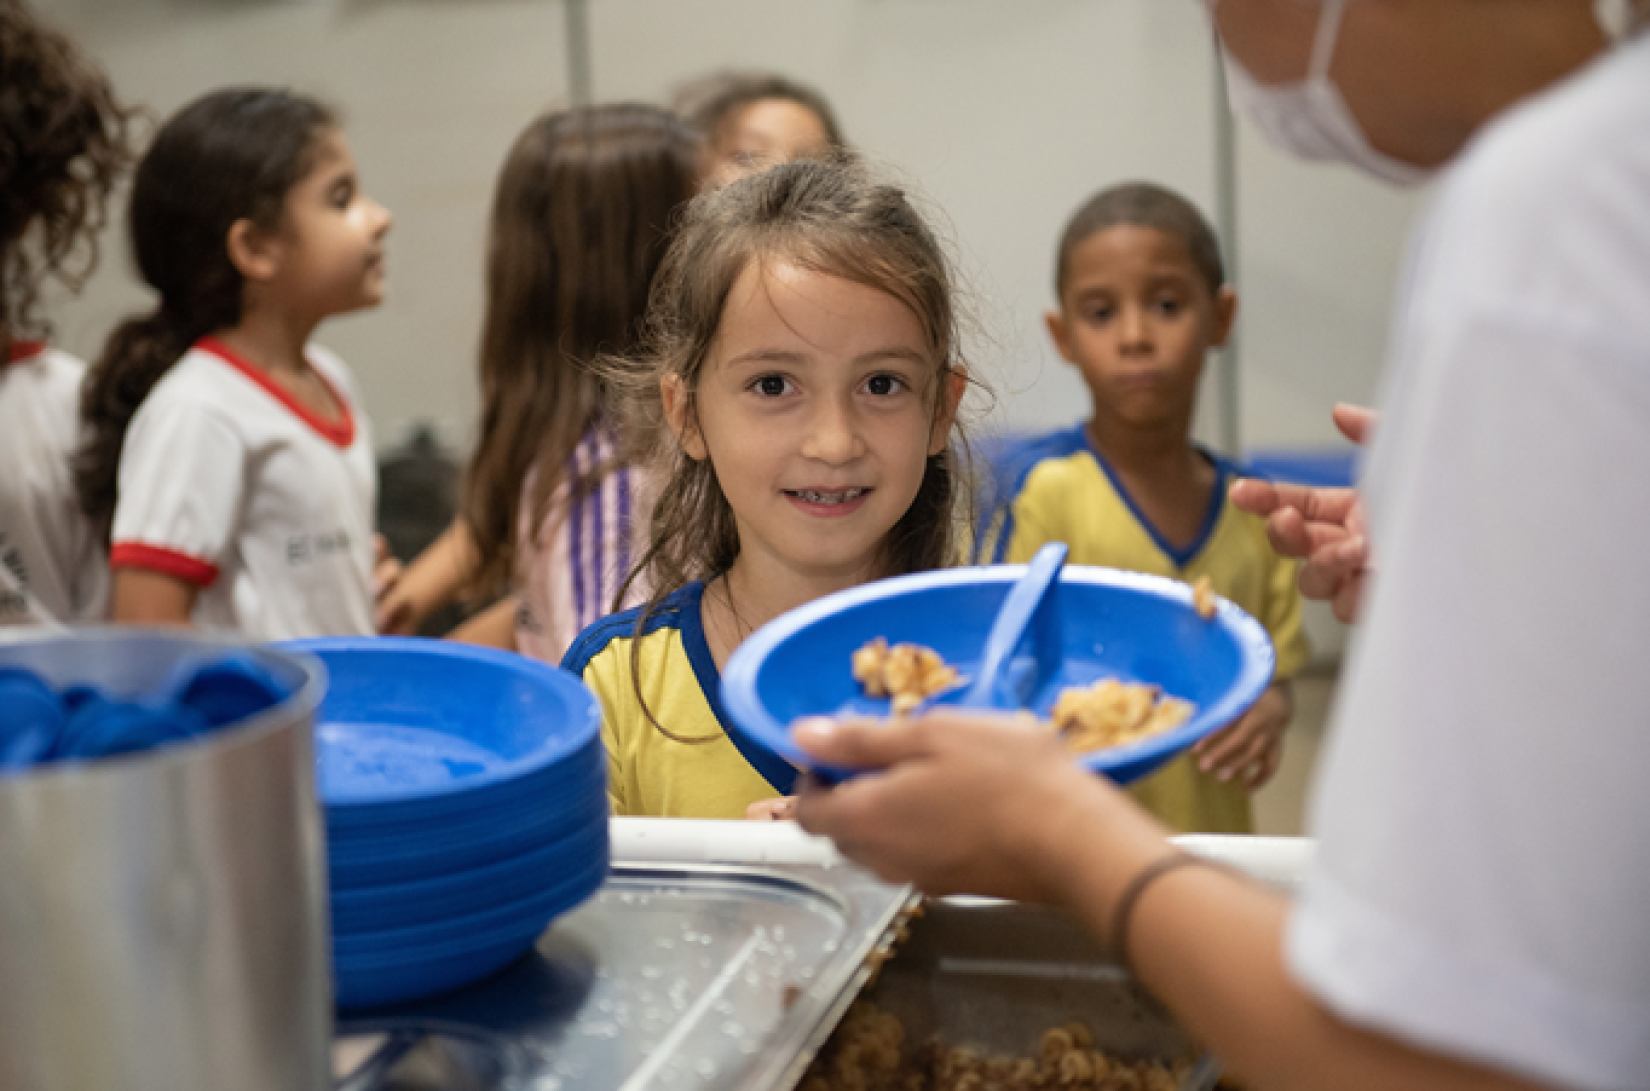 Relatório do UNICEF e WFP revela que 370 milhões de crianças ao redor do mundo perderam em média 40% das refeições escolares desde quando as restrições da COVID-19 fecharam as salas de aula.